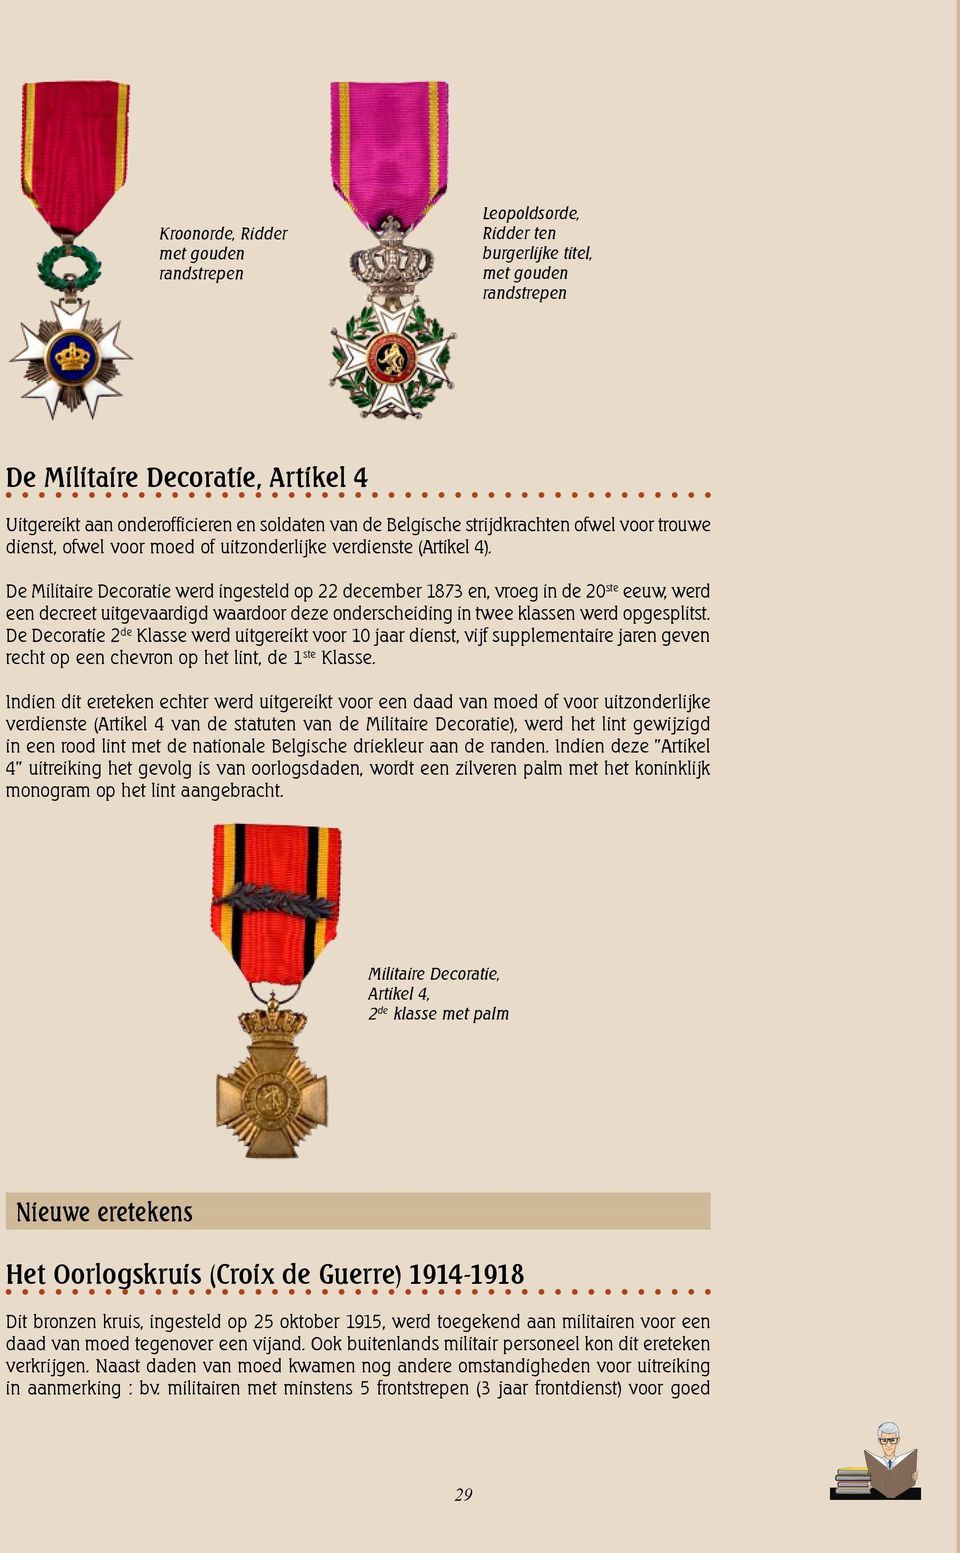 De Militaire Decoratie werd ingesteld op 22 december 1873 en, vroeg in de 20 ste eeuw, werd een decreet uitgevaardigd waardoor deze onderscheiding in twee klassen werd opgesplitst.